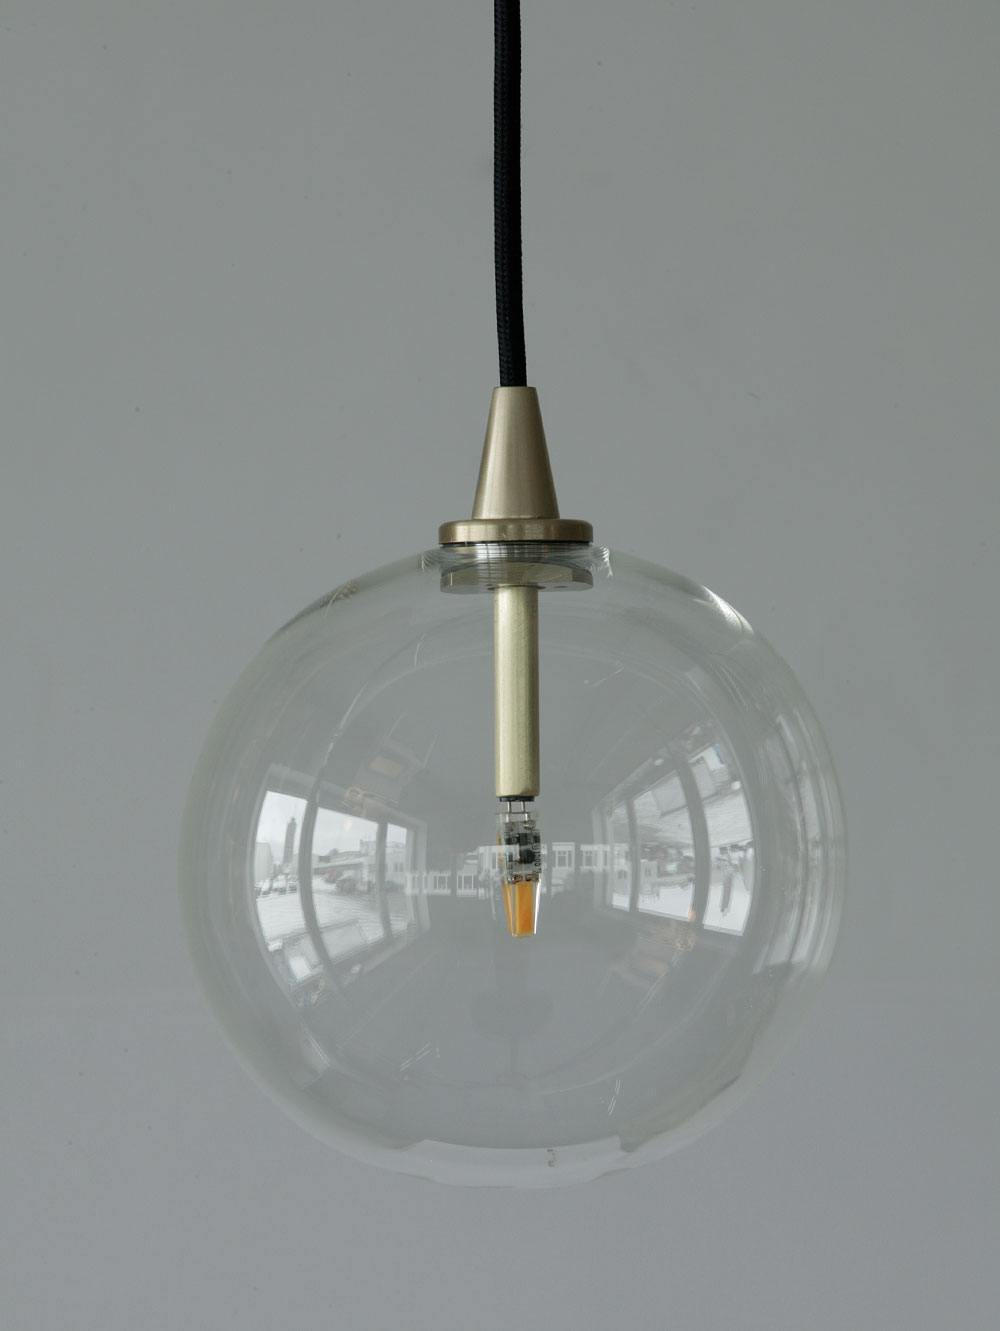 Kleine moderne Glaskugel-Hängeleuchte, Ø 15 cm: Kleines Modell: die Glaskugel-Hängelampe mit 15 cm Durchmesser